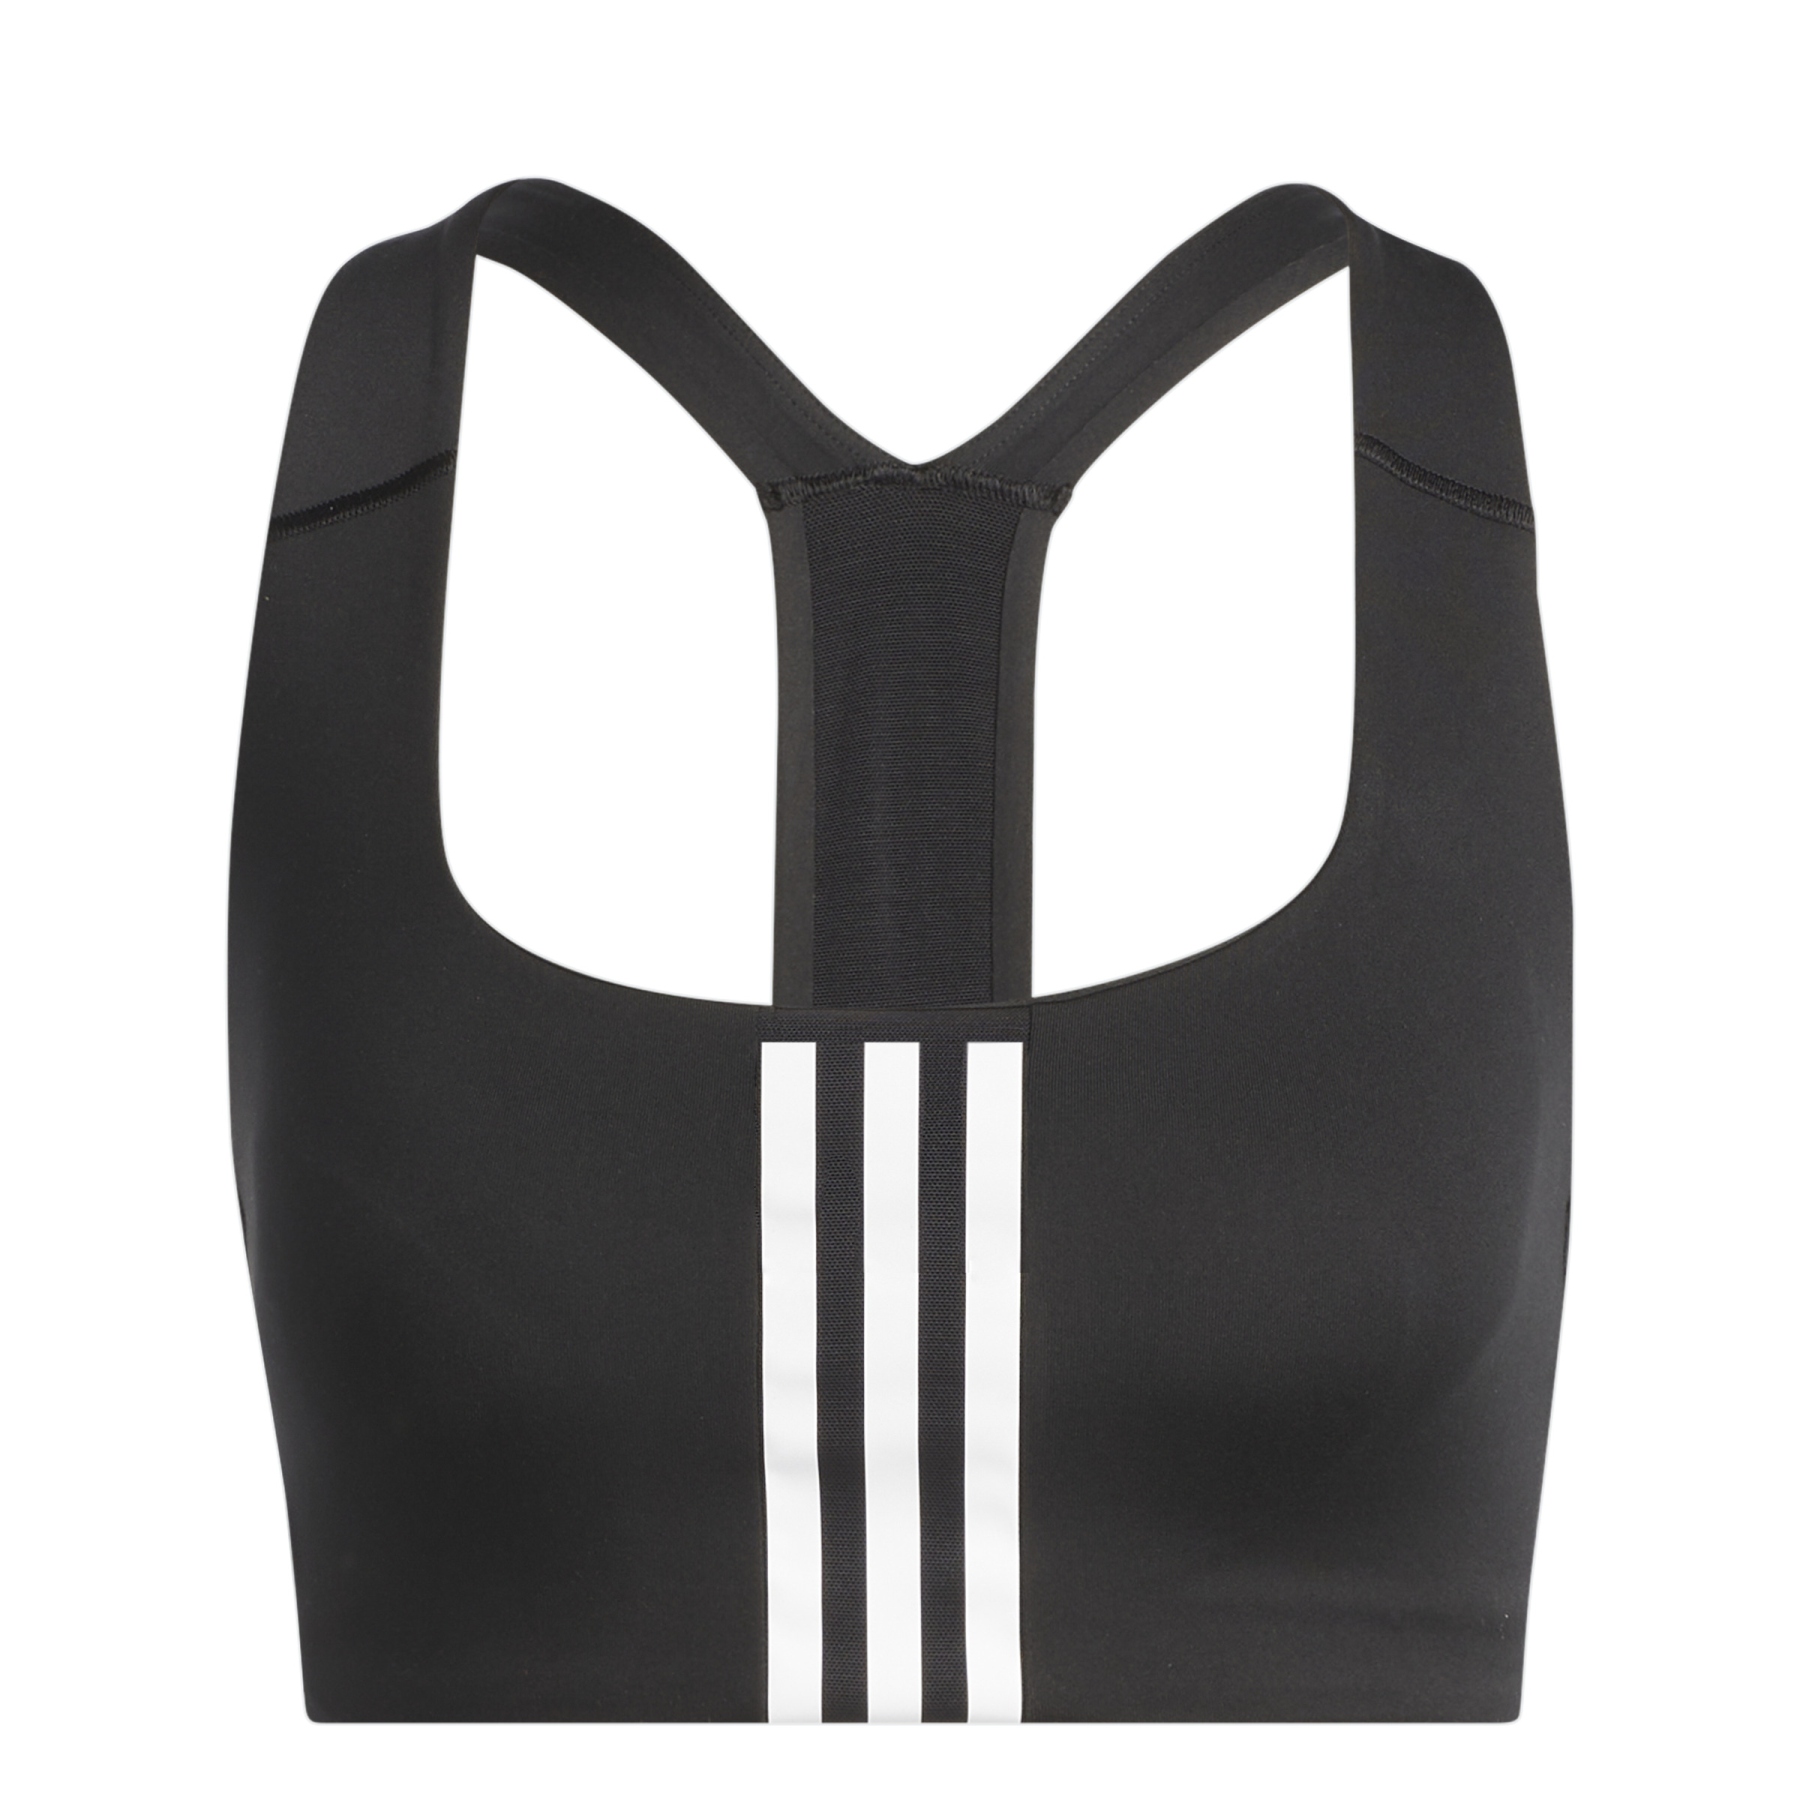 Bild von adidas Frauen Powerimpact Training Sport-BH mit mittlerer Unterstützung - schwarz/weiss HE9063